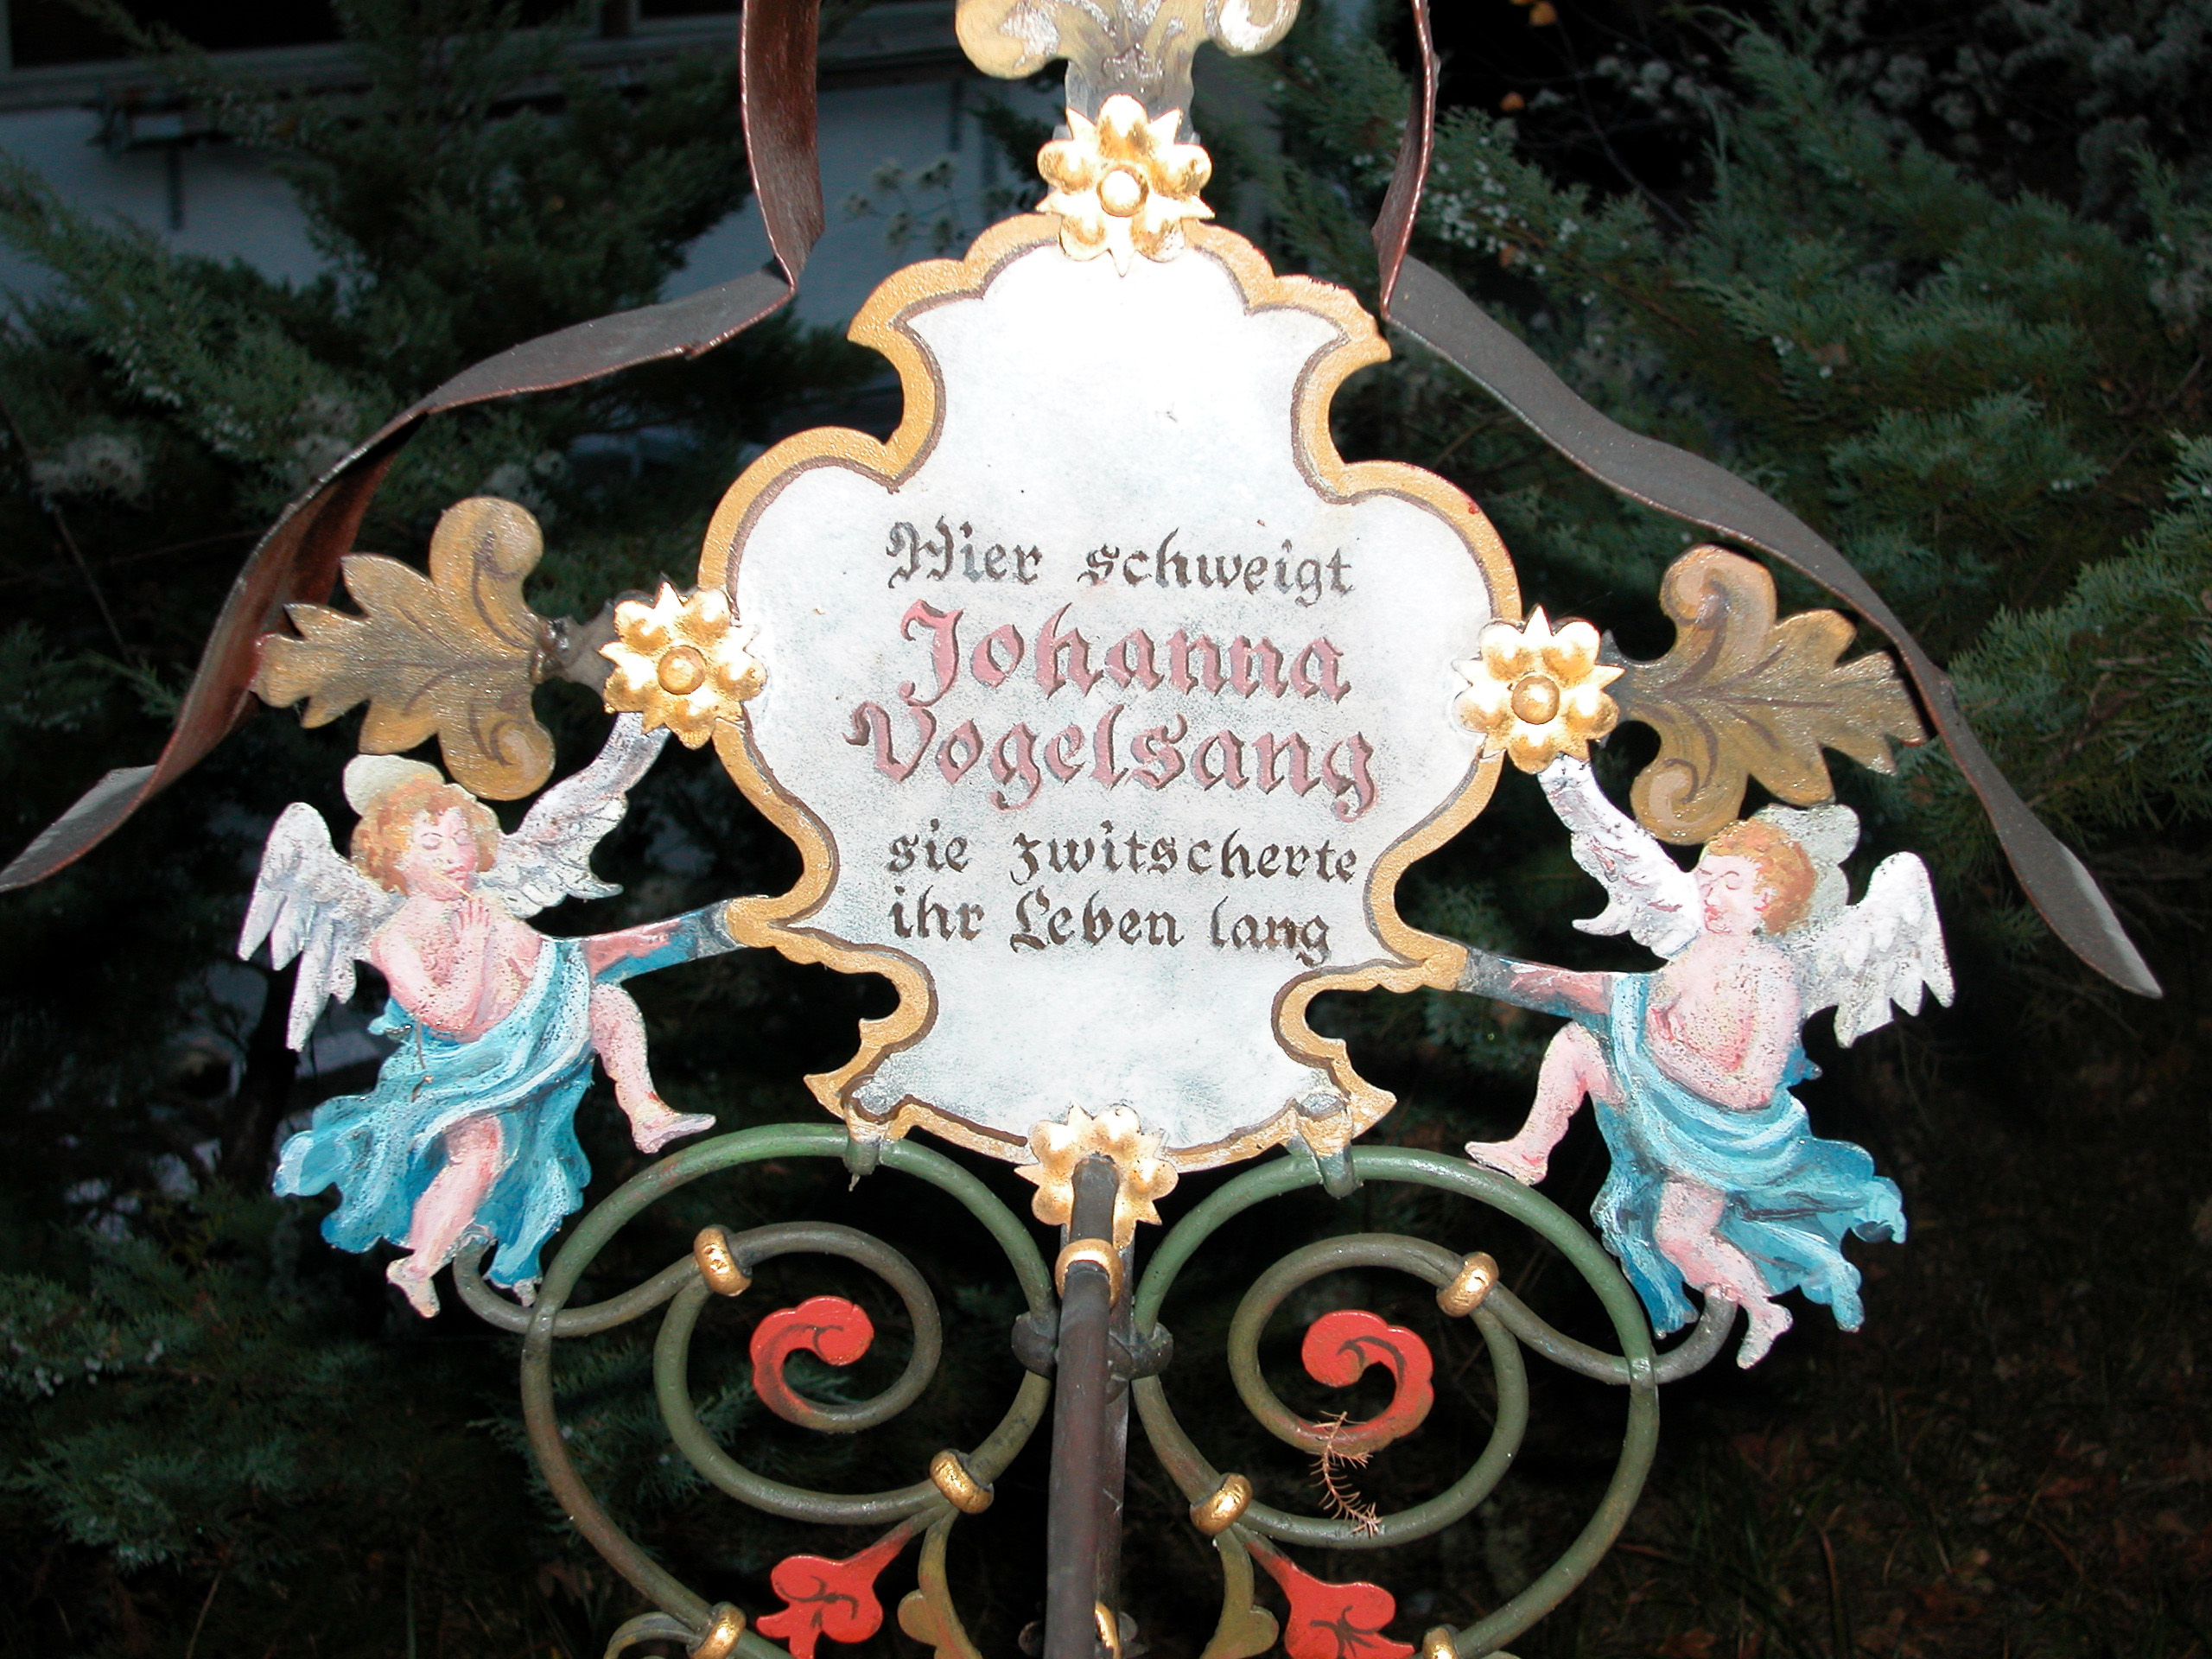 <p>Épitaphes rigolotes au cimetière de Kramsach</p>
